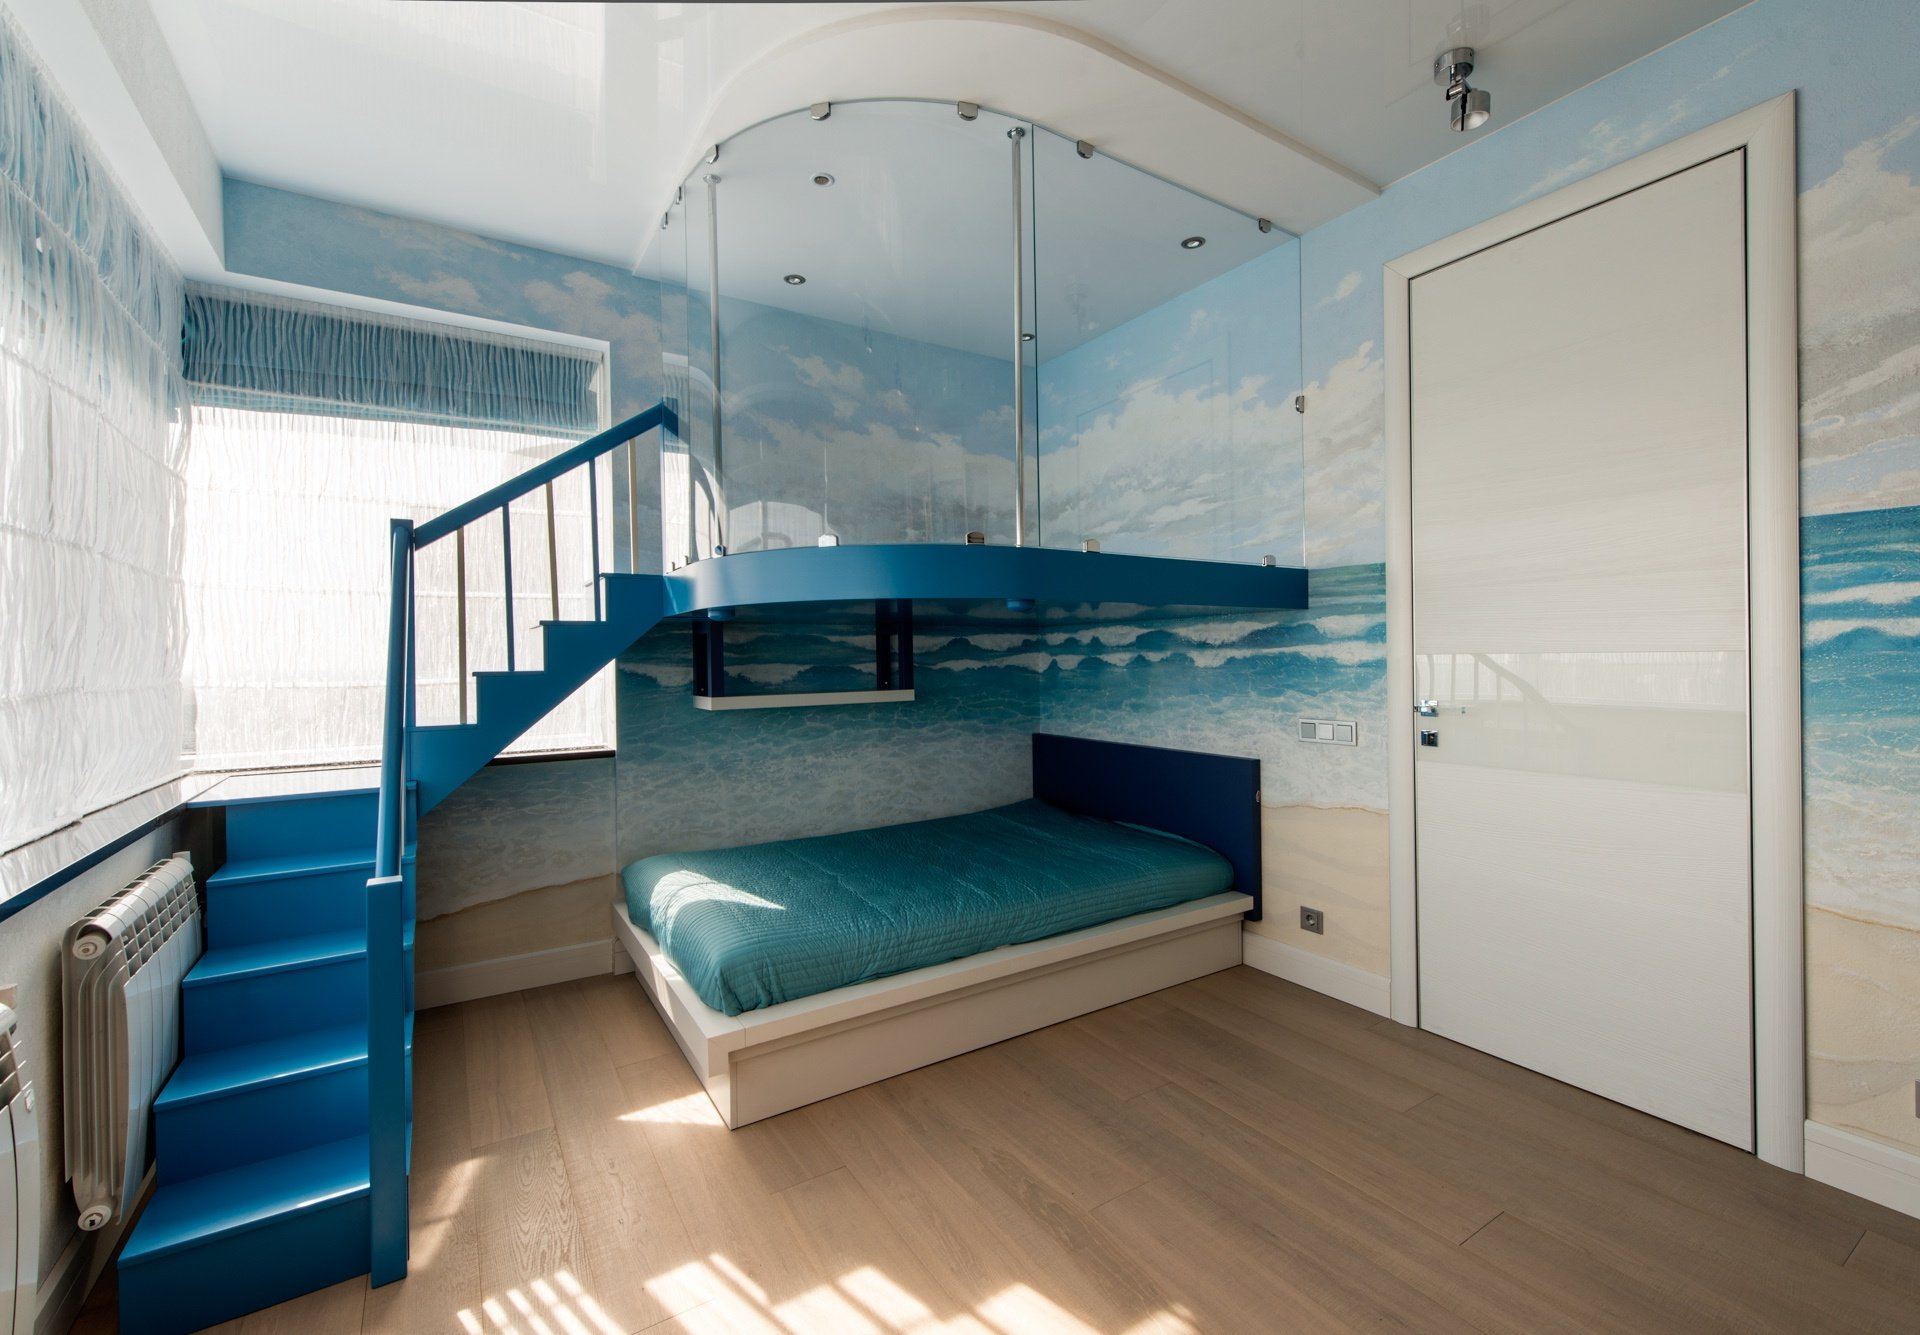 Интерьер 1 комнатной квартиры в морском стиле